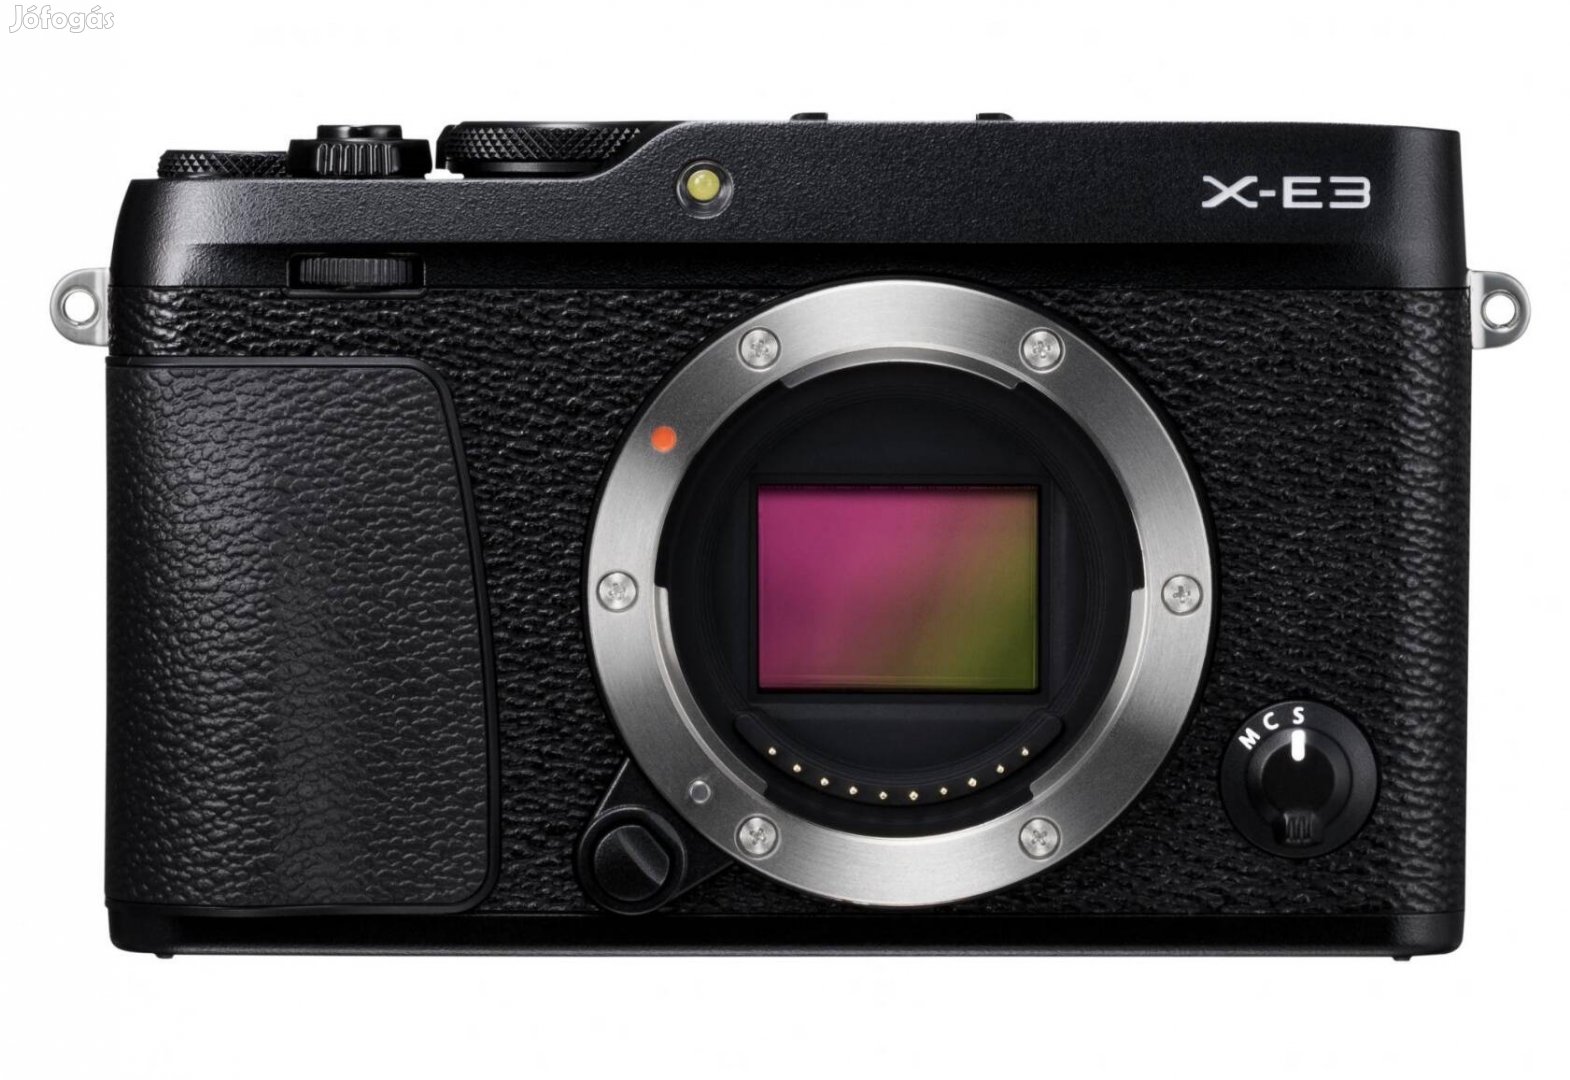 Keresek Fujifilm X-E3 fényképezőgépet 